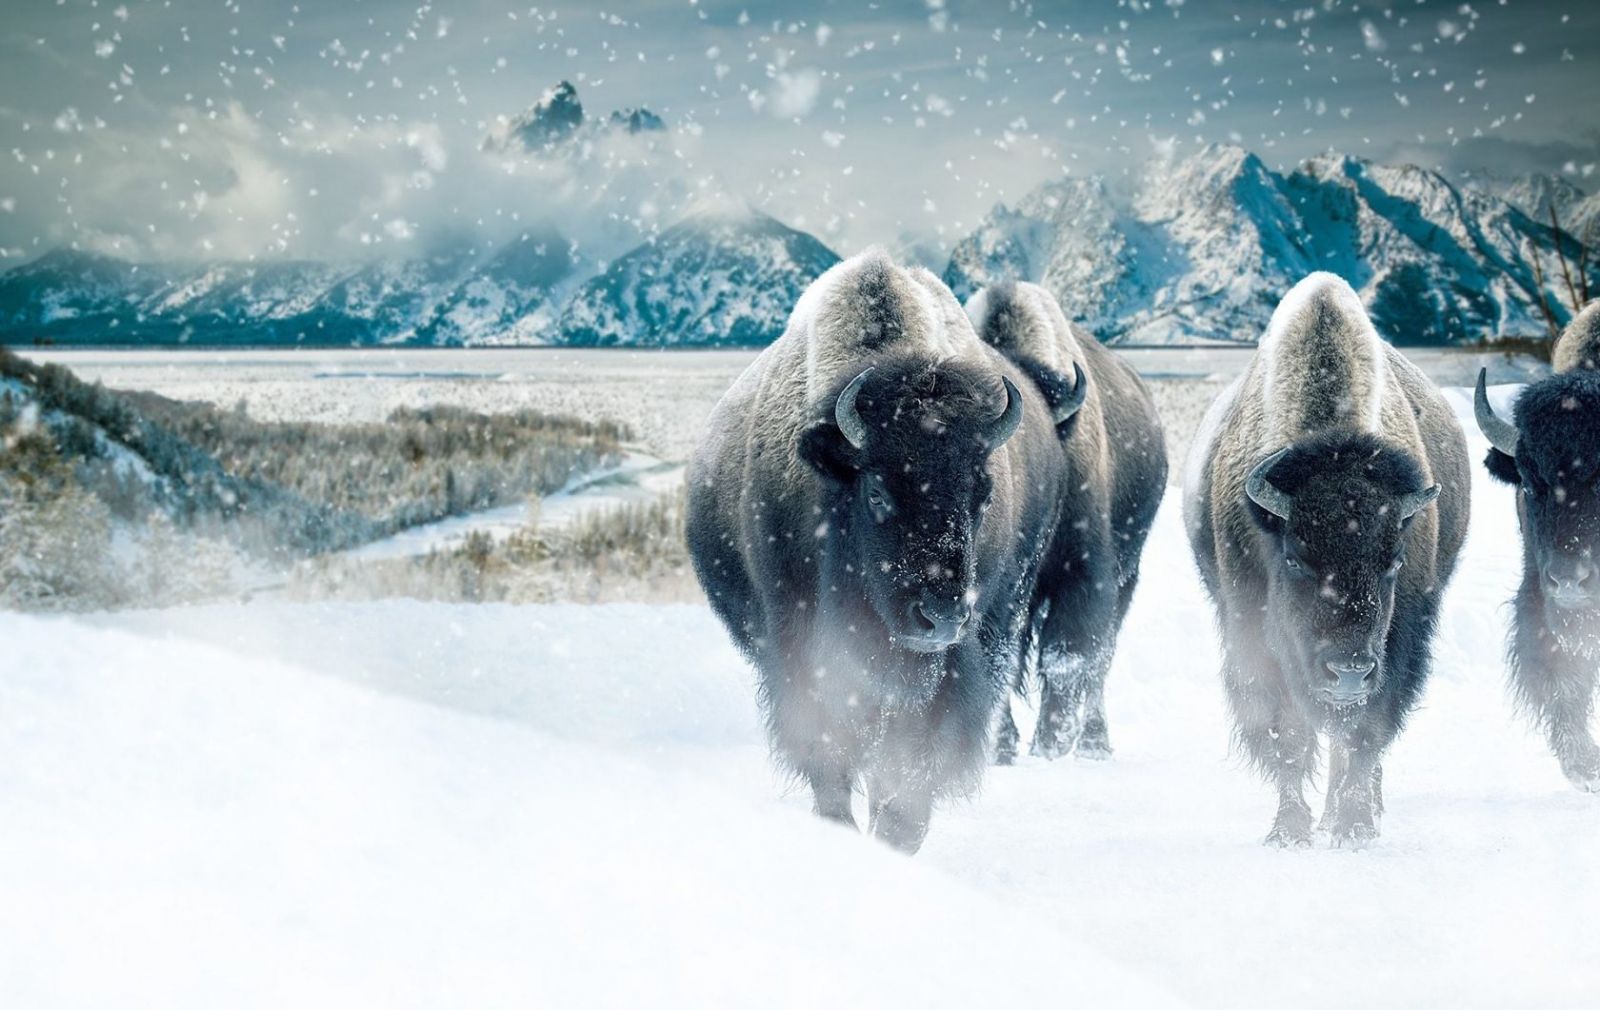 Đàn bò rừng ở Vườn quốc gia Yellowstone vào mùa đông